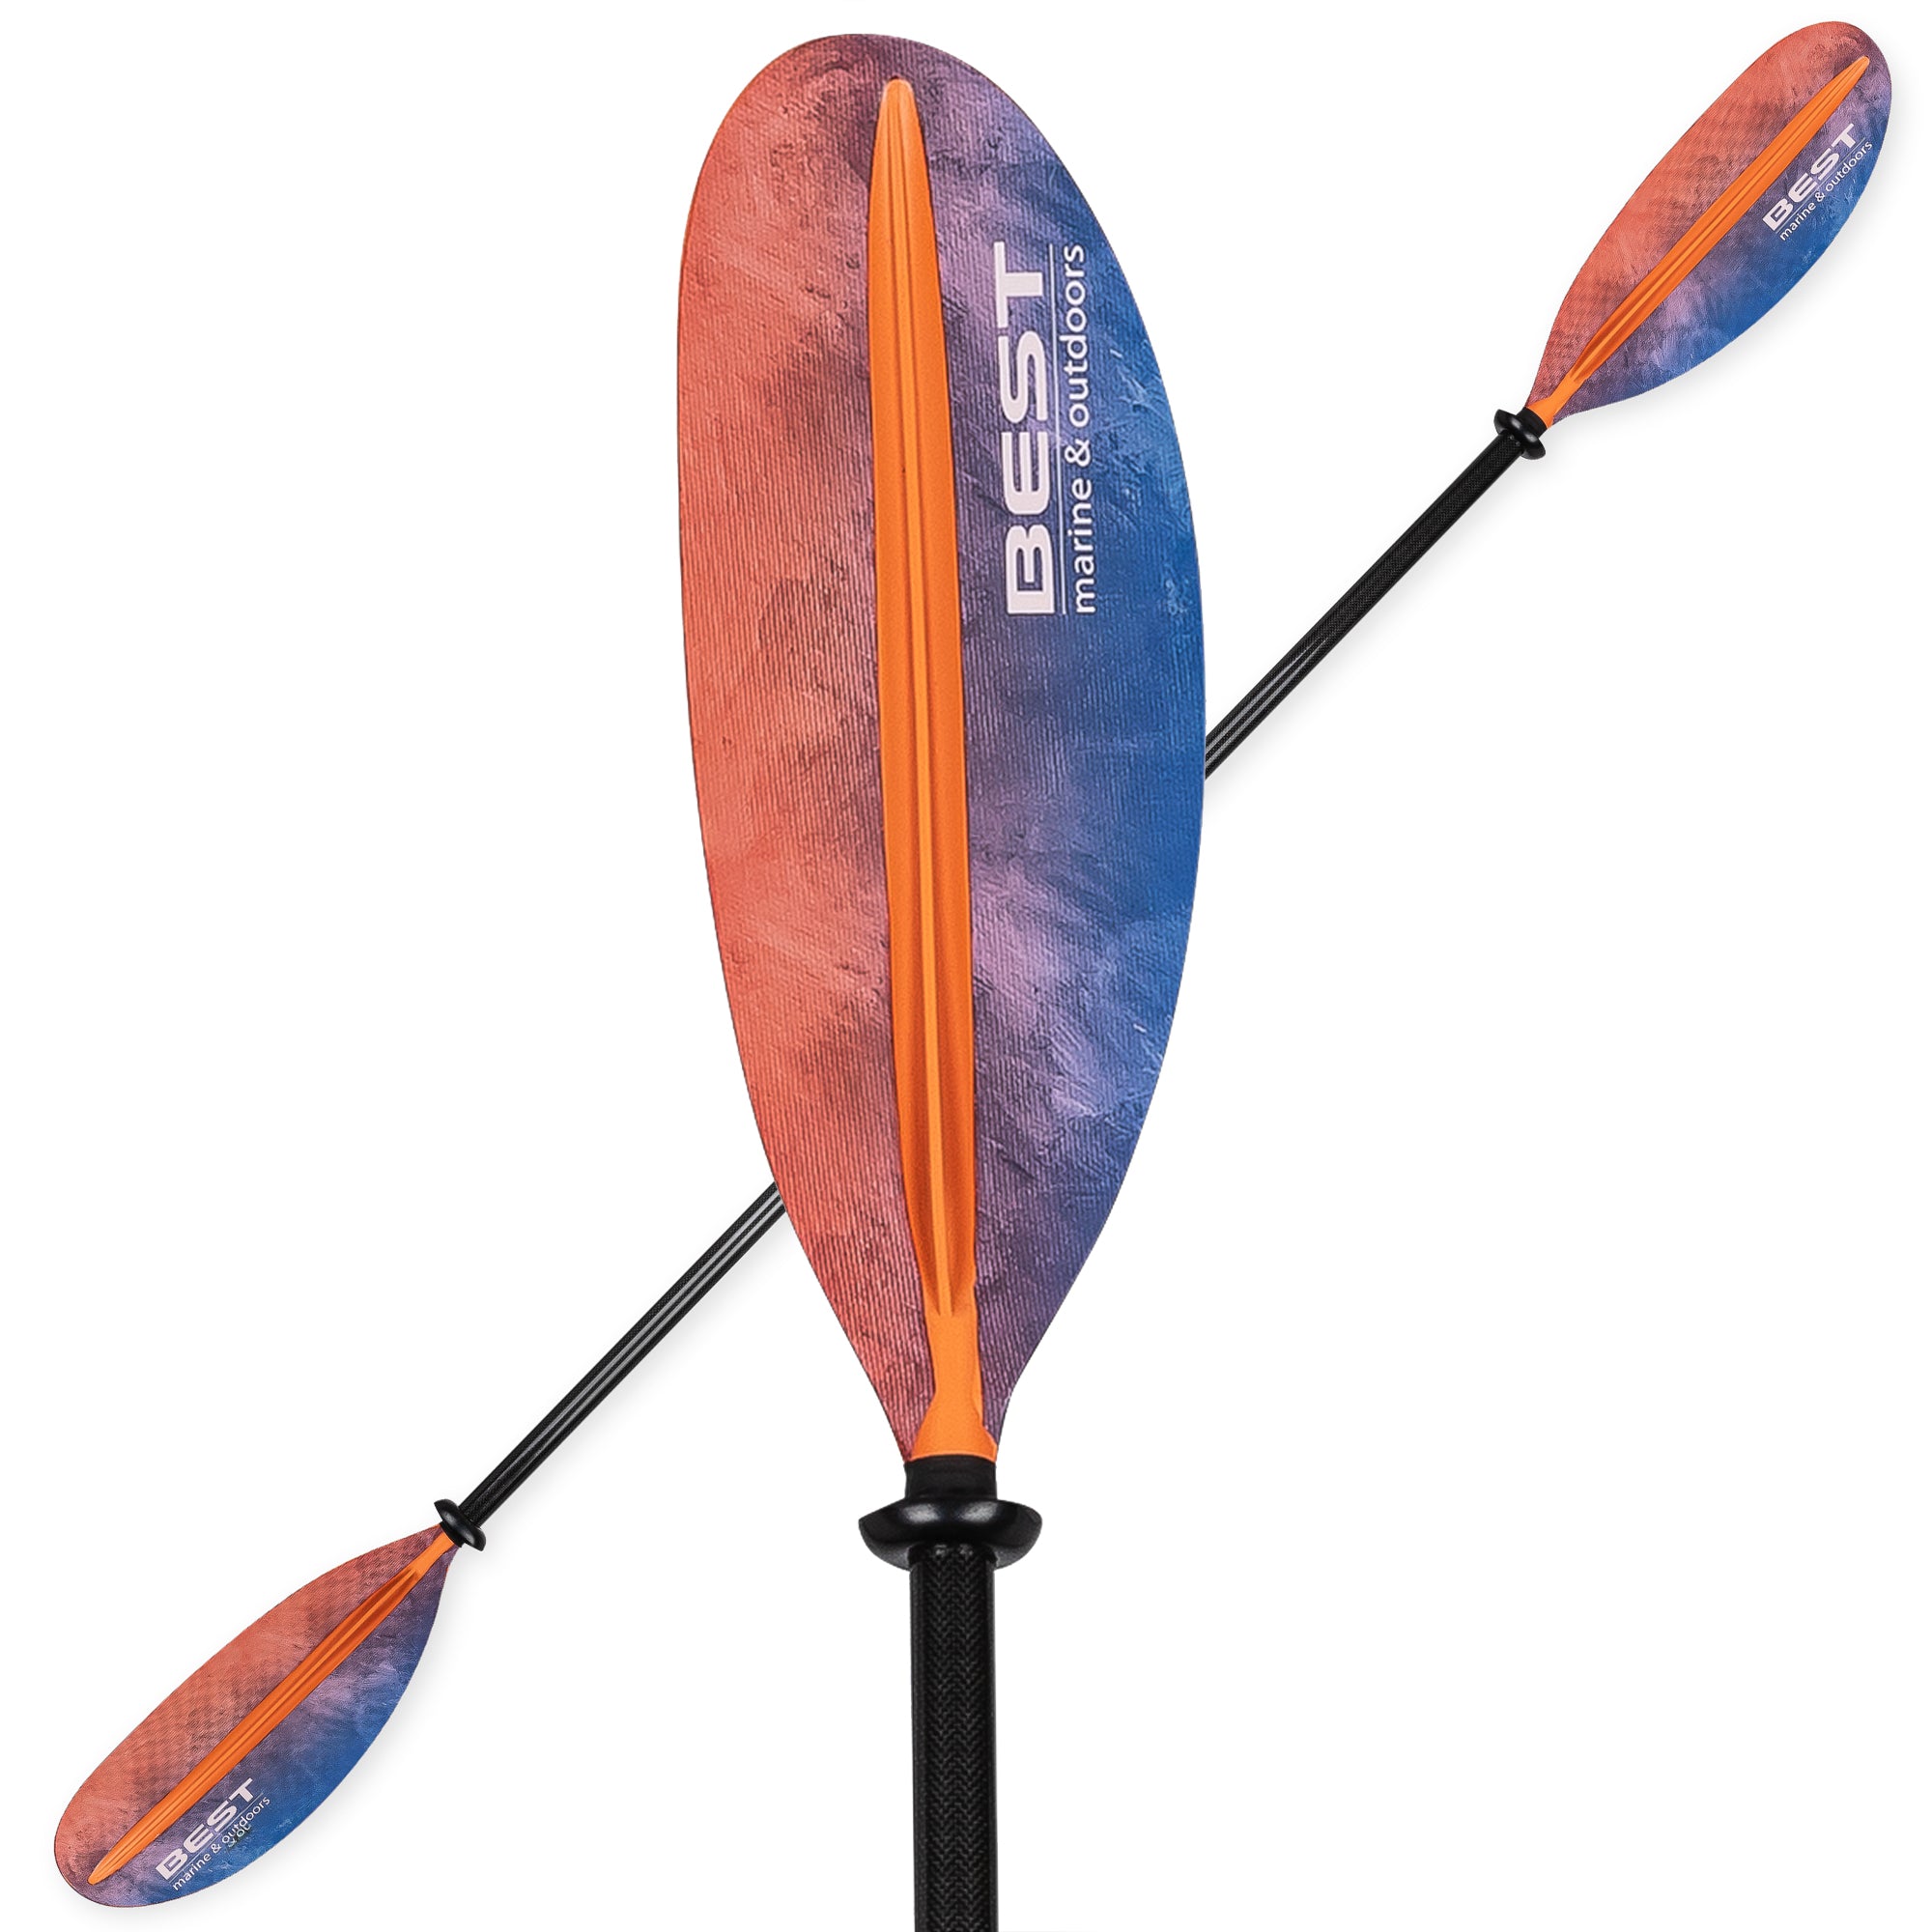 Kayak Paddle, Carbon Fiber Paddle, Boat Paddle, Canoe Fishing Boat For Kayak  